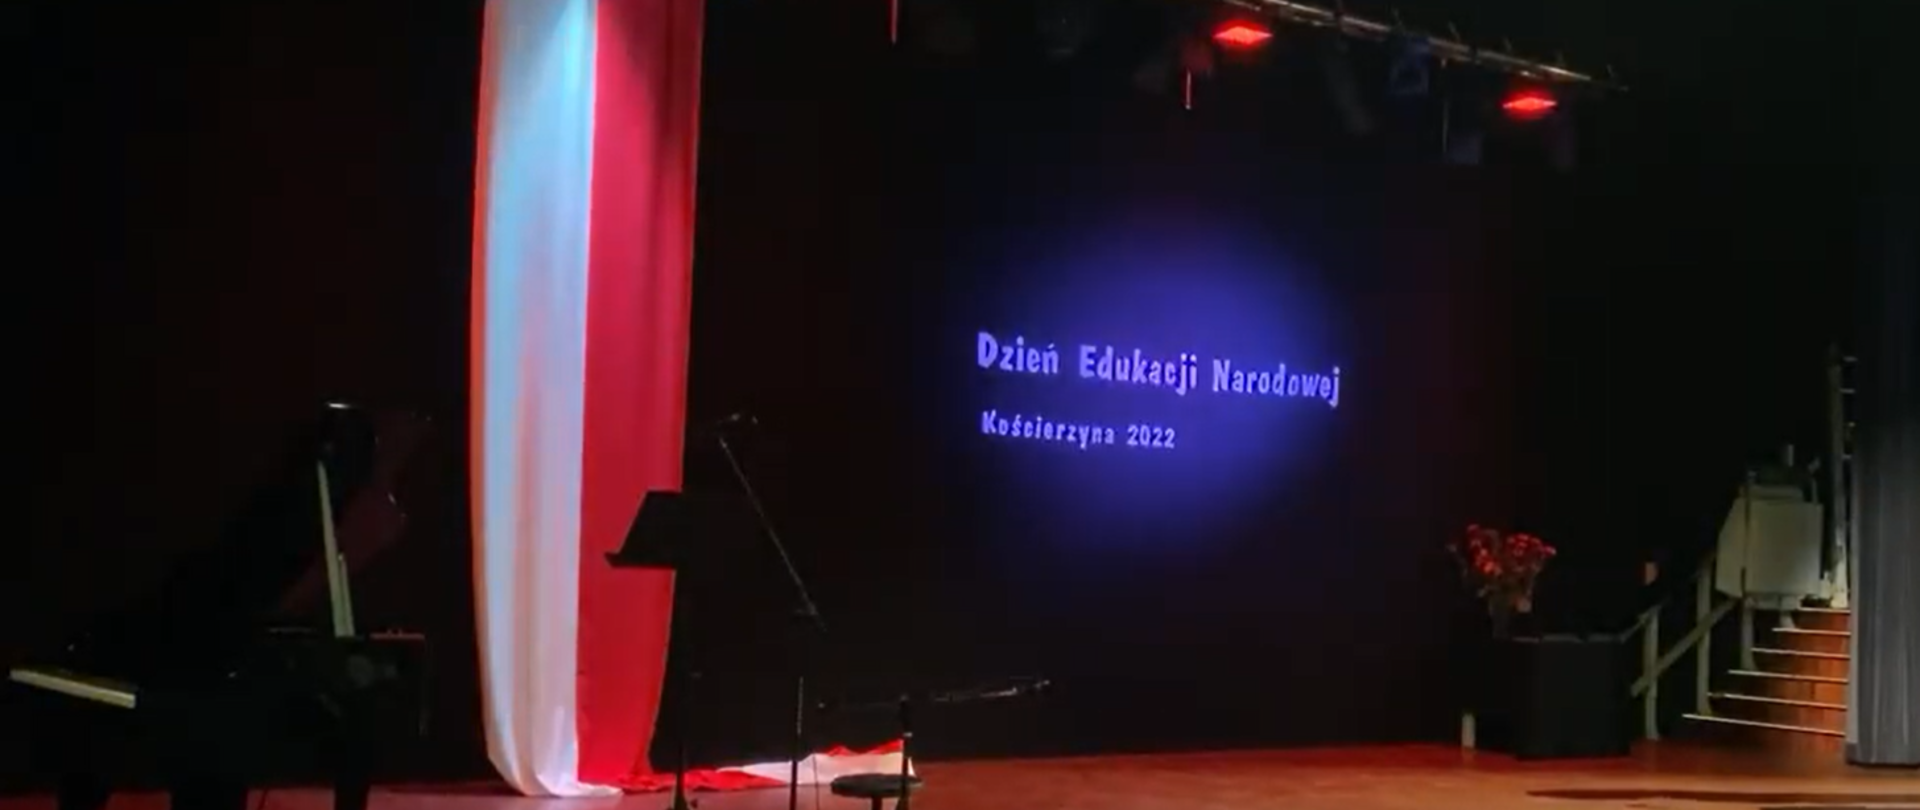 Na ciemnym tle w centralnej części podświetlony na niebiesko napis "Dzień Edukacji Narodowej Kościerzyna 2022". Z lewej strony obrazka w pionie biało- czerwona flaga, a po jej lewej stronie można dostrzec czarny fortepian.